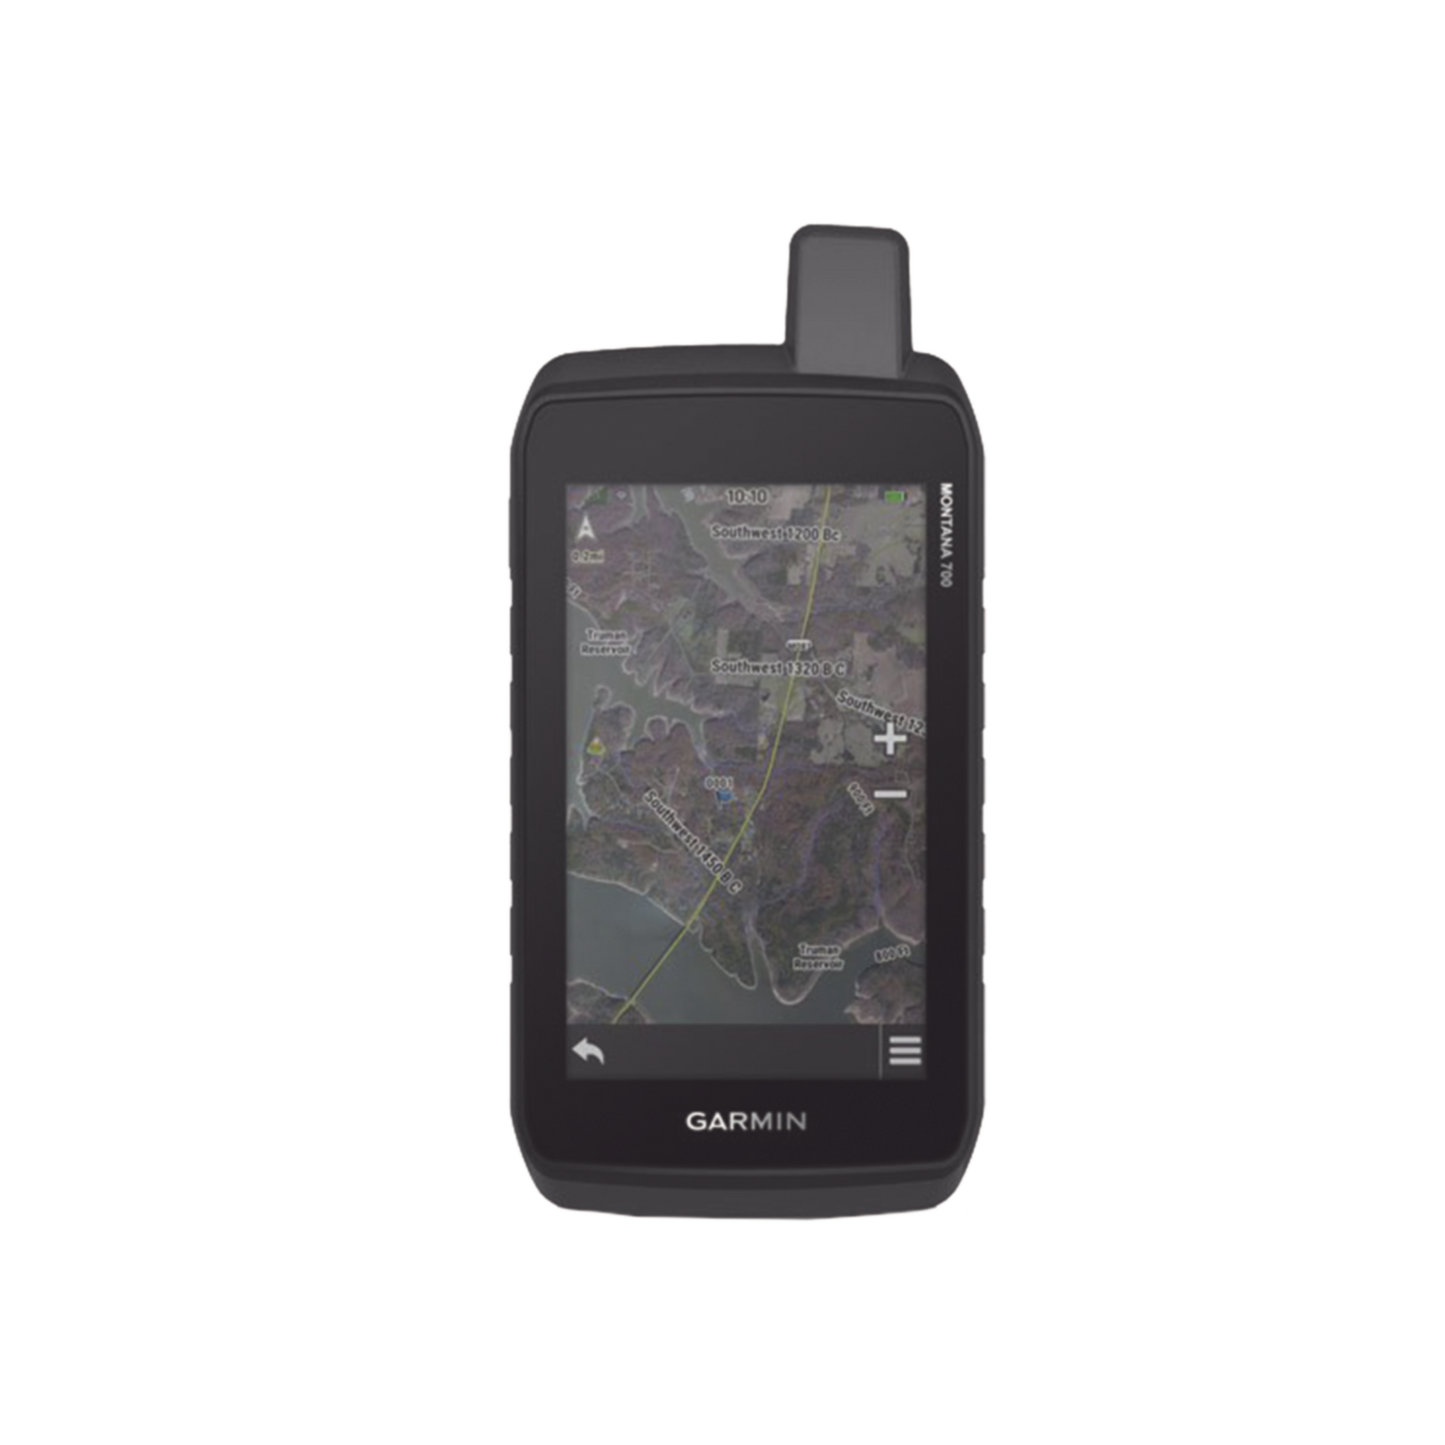 Navegador GPS portátil Montana® 700, con pantalla táctil de 5" incluye batería interna, memoria de almacenamiento de 16GB